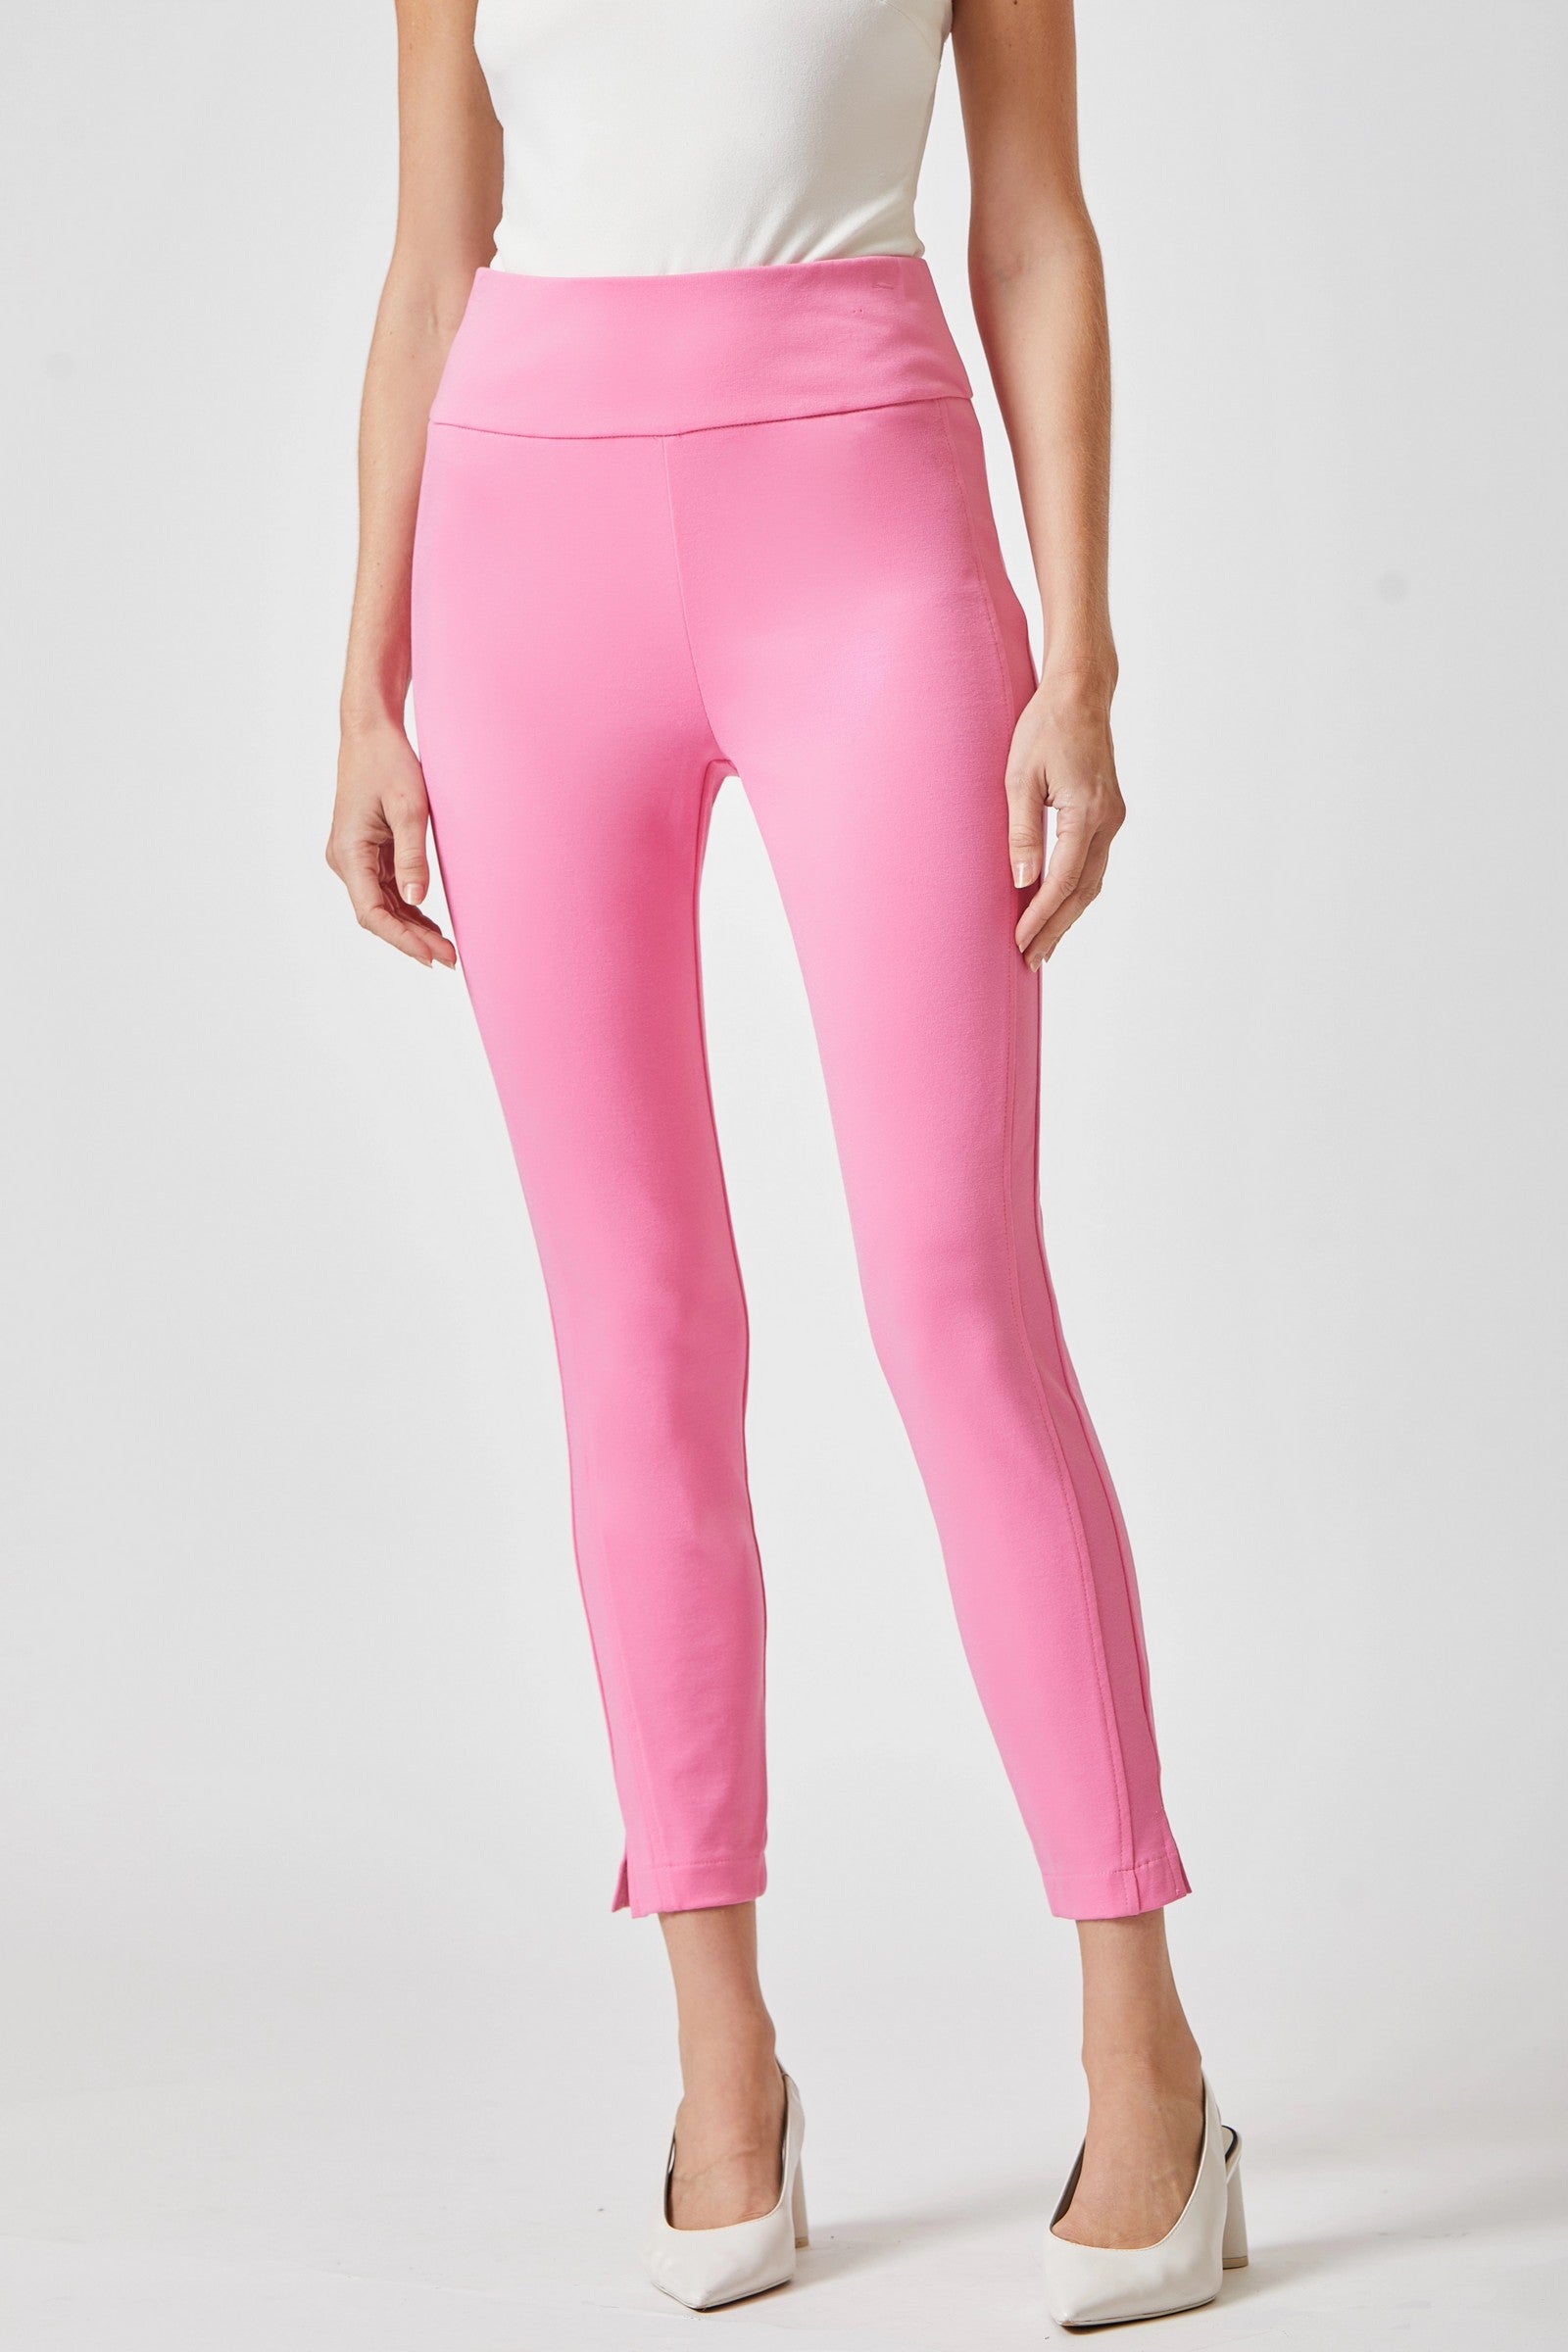 Dear Scarlett Magic Skinny Pants in Twelve Colors 28 inch Inseam Final Sale Dark Pink Ave Shops